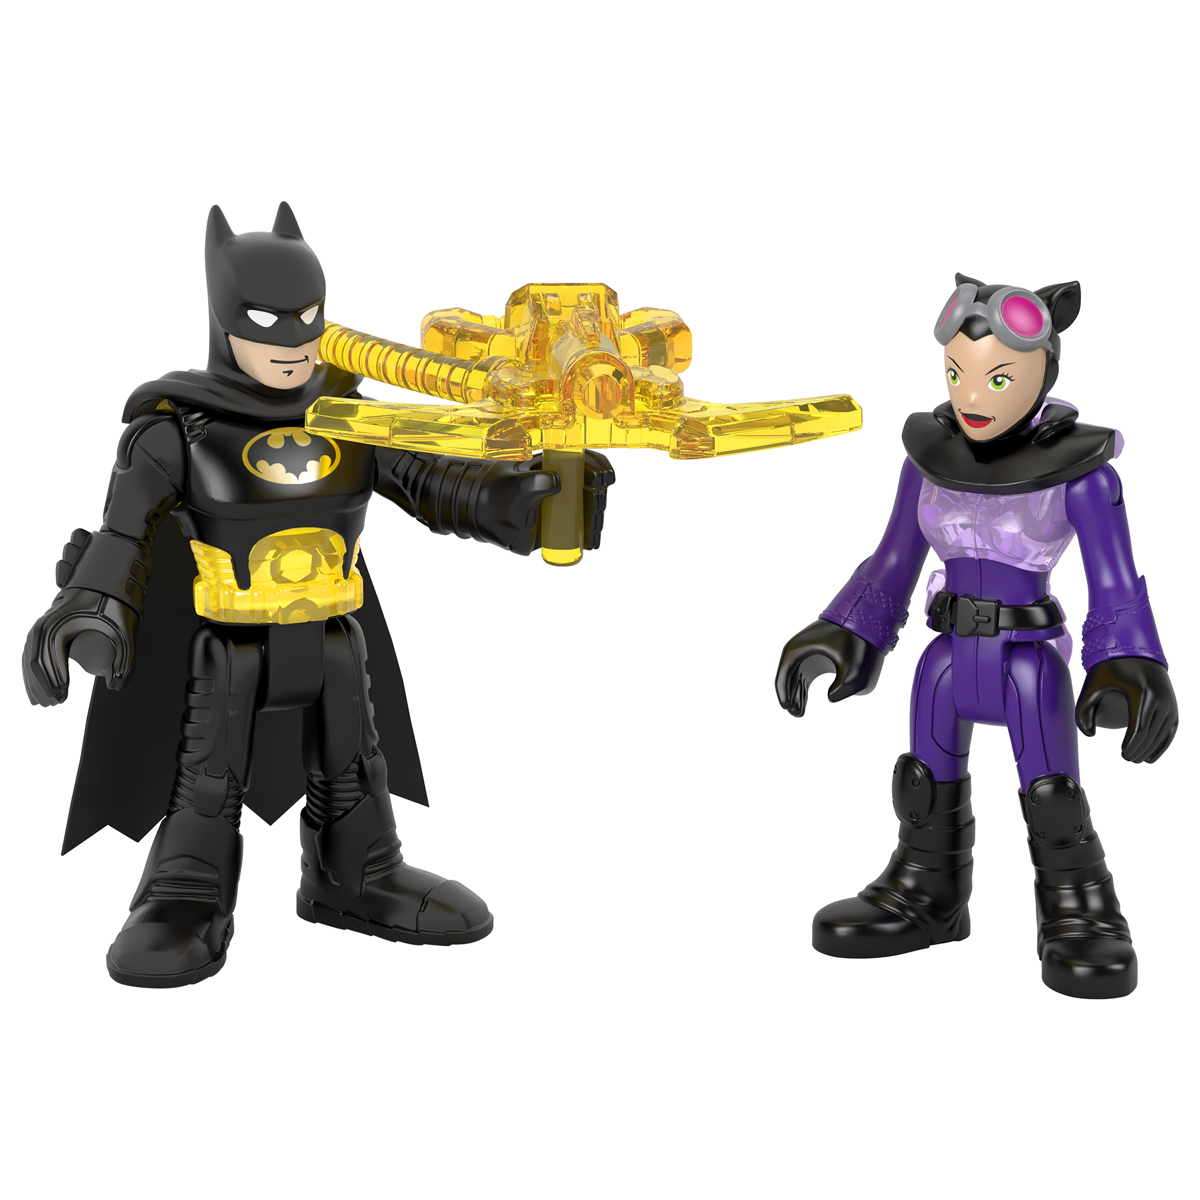 Imaginext DC Super Friends - Batman & Catwoman Figures | The Entertainer